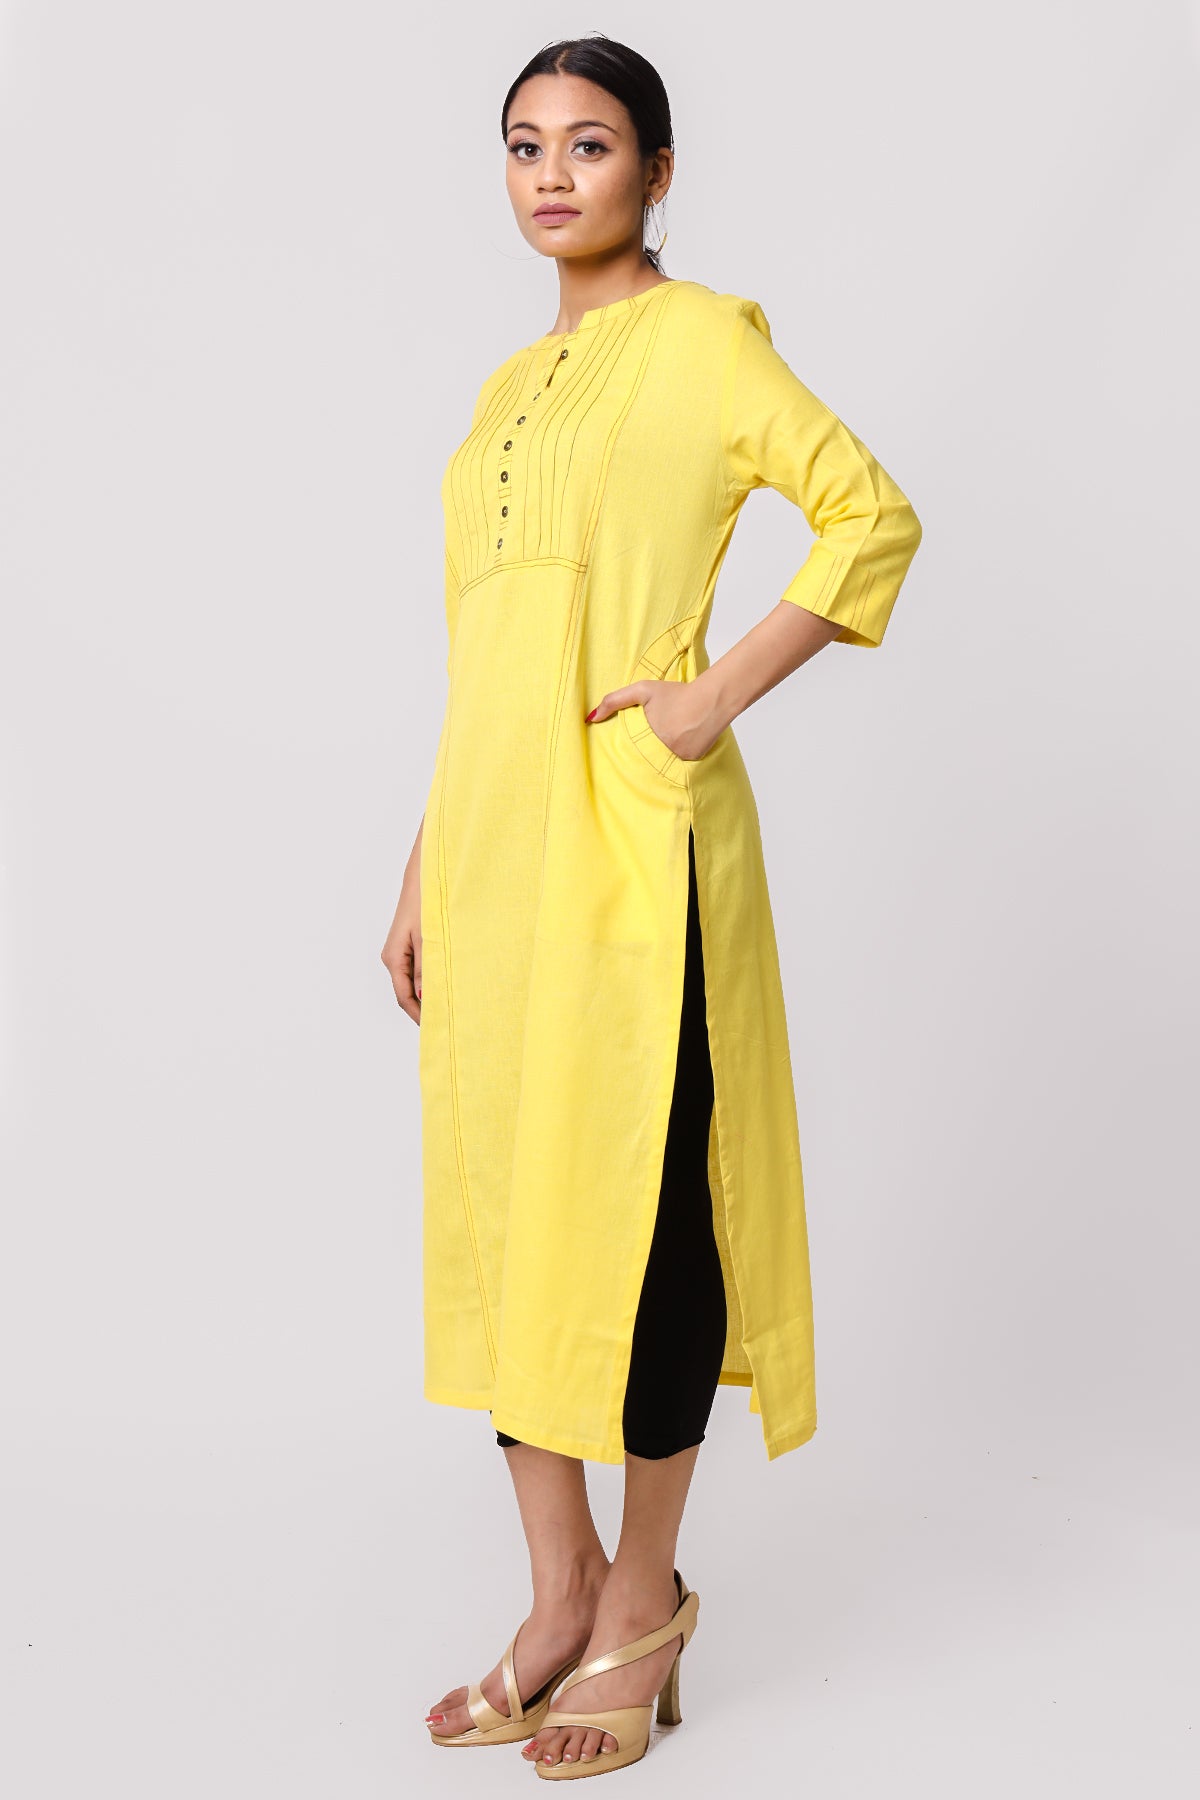 Silkfab Women's Cotton Flax Kurta Denim Stitch Pin Tucks Yellow - SILKFAB